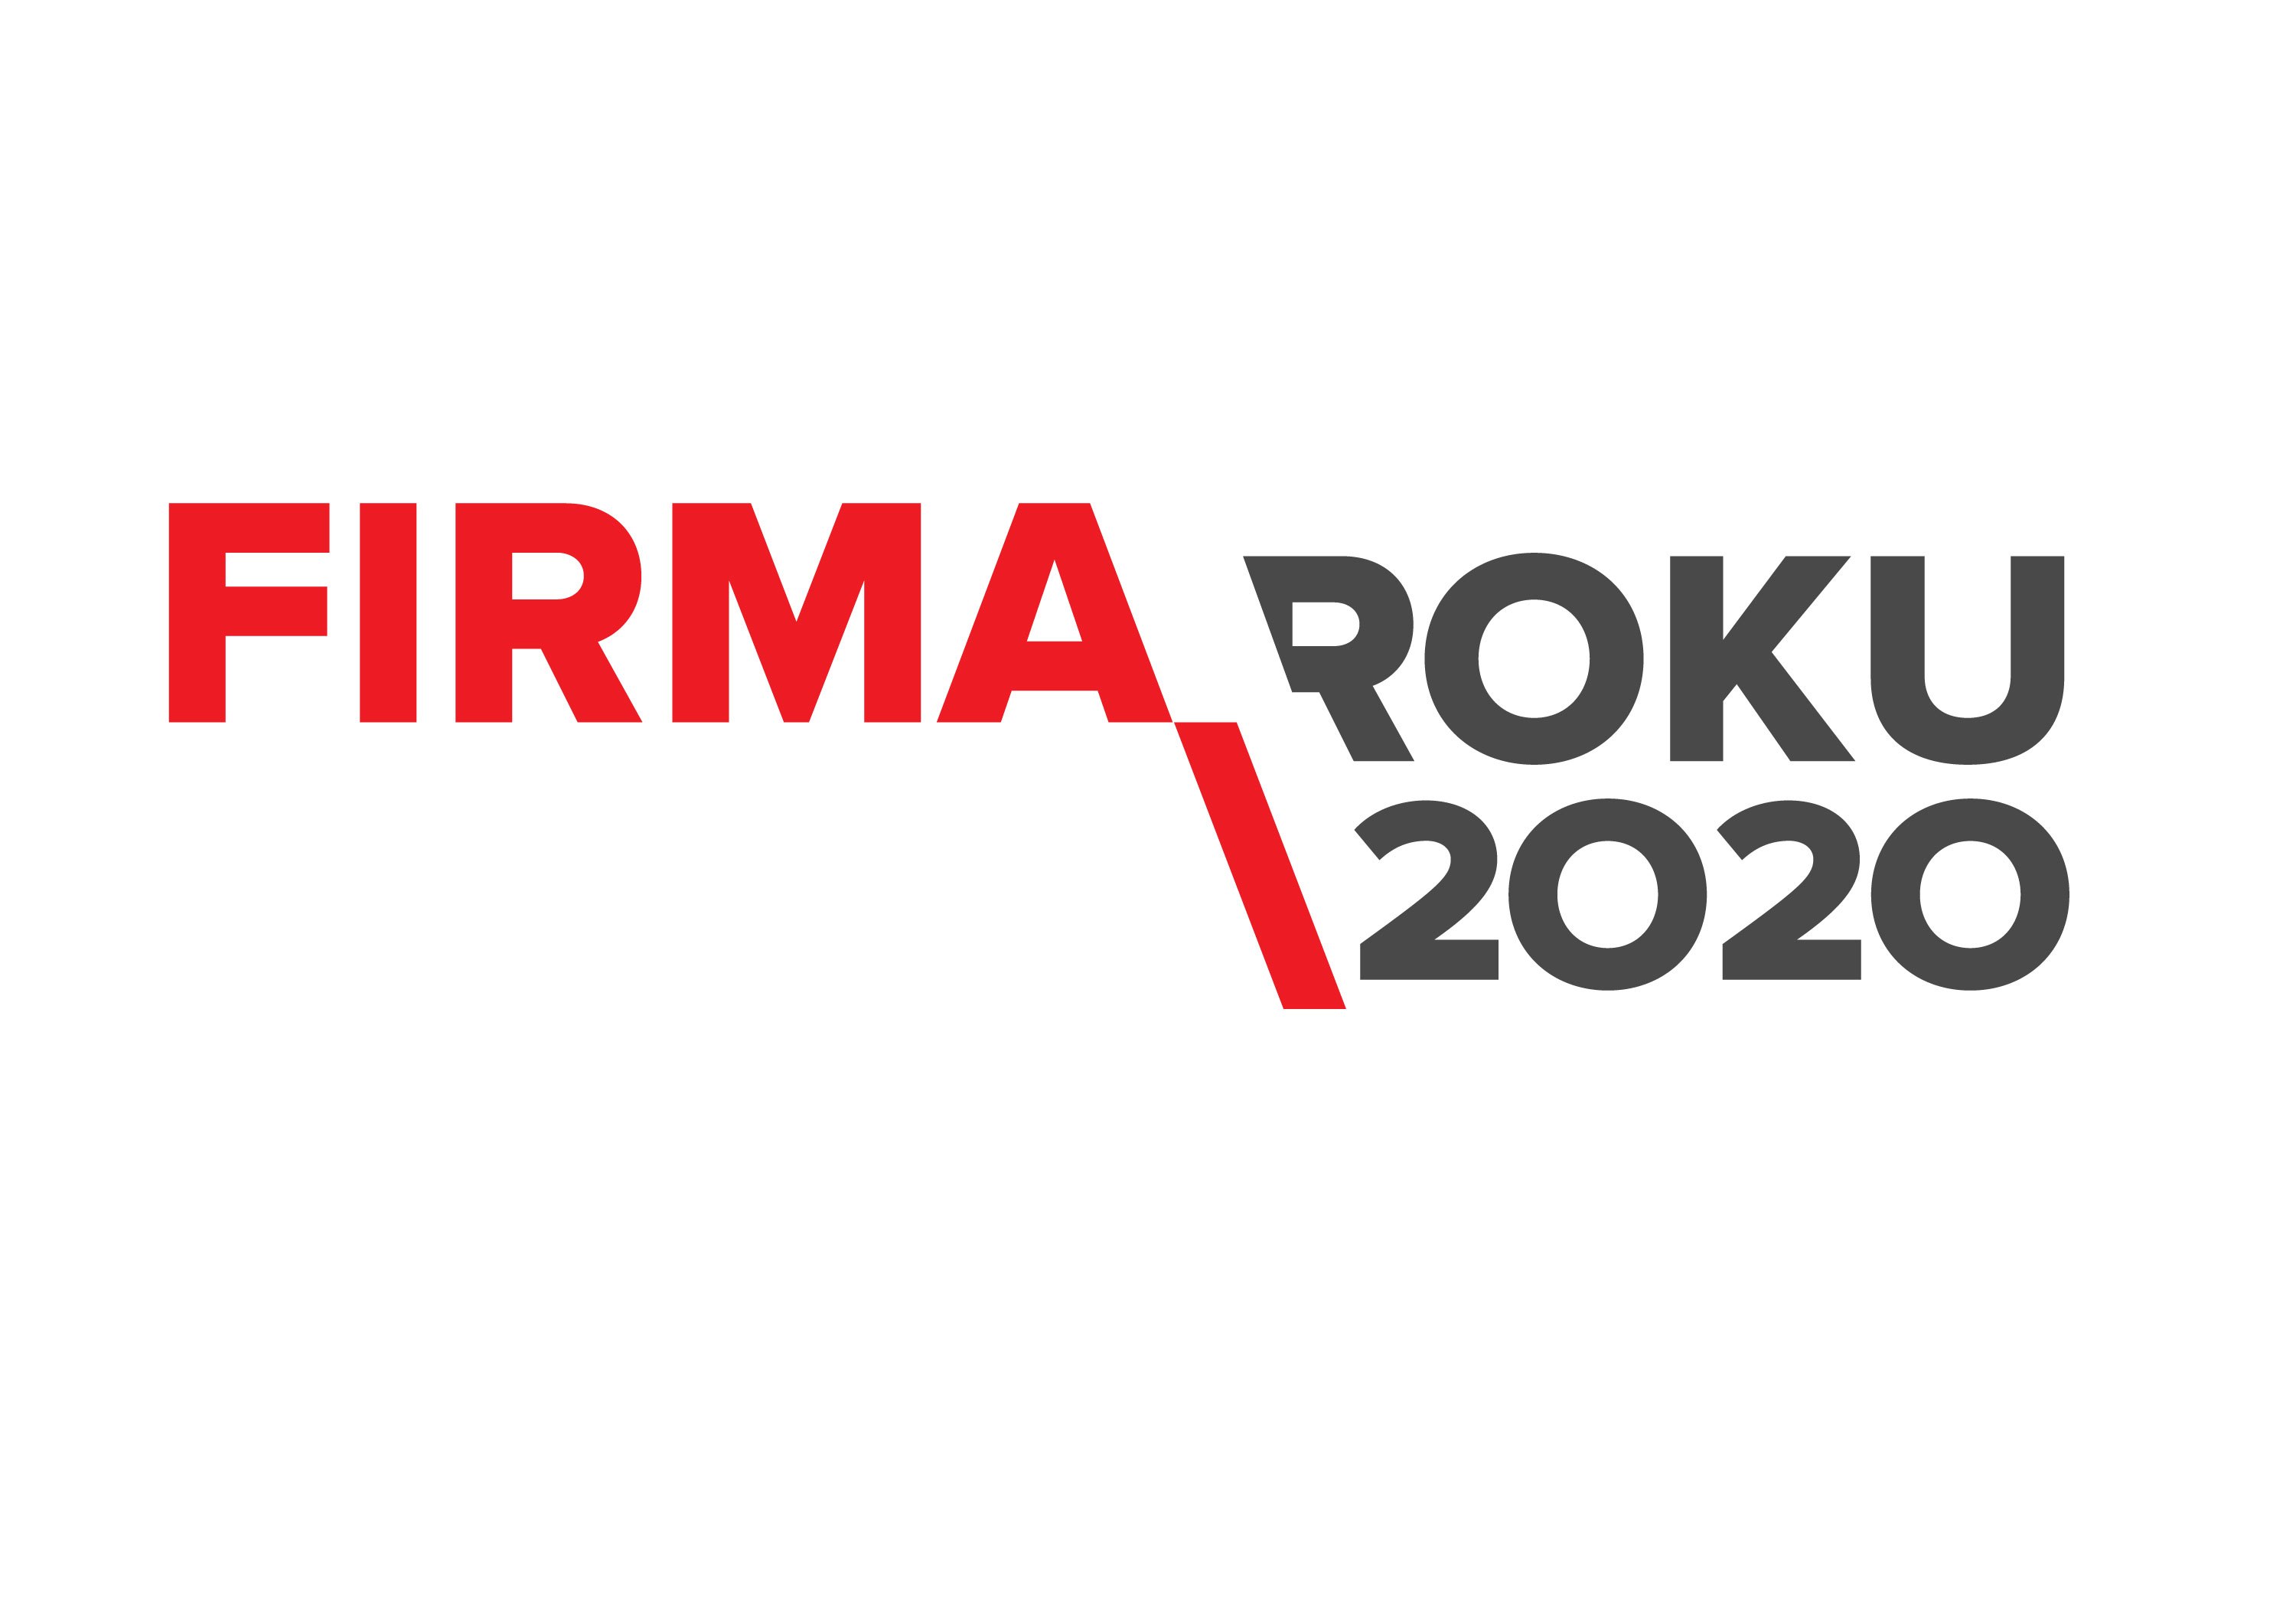 FIRMA-ROKU_2020.jpg